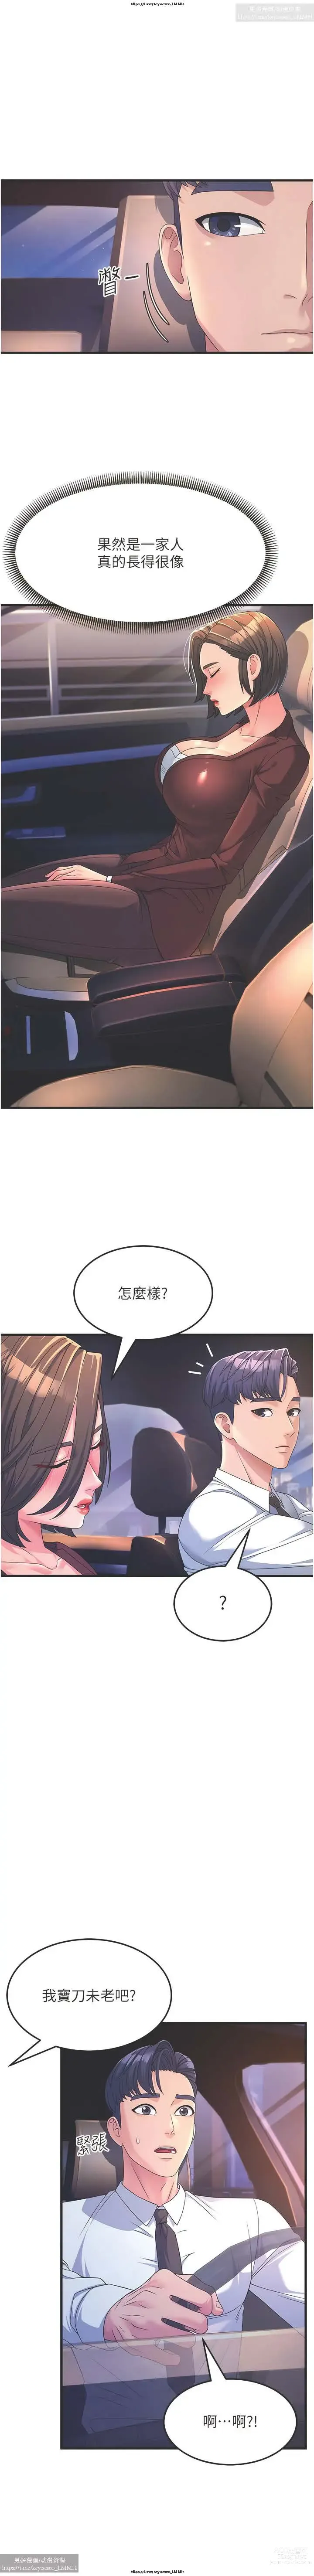 Page 139 of manga 韩漫：炮友变岳母 1-9话